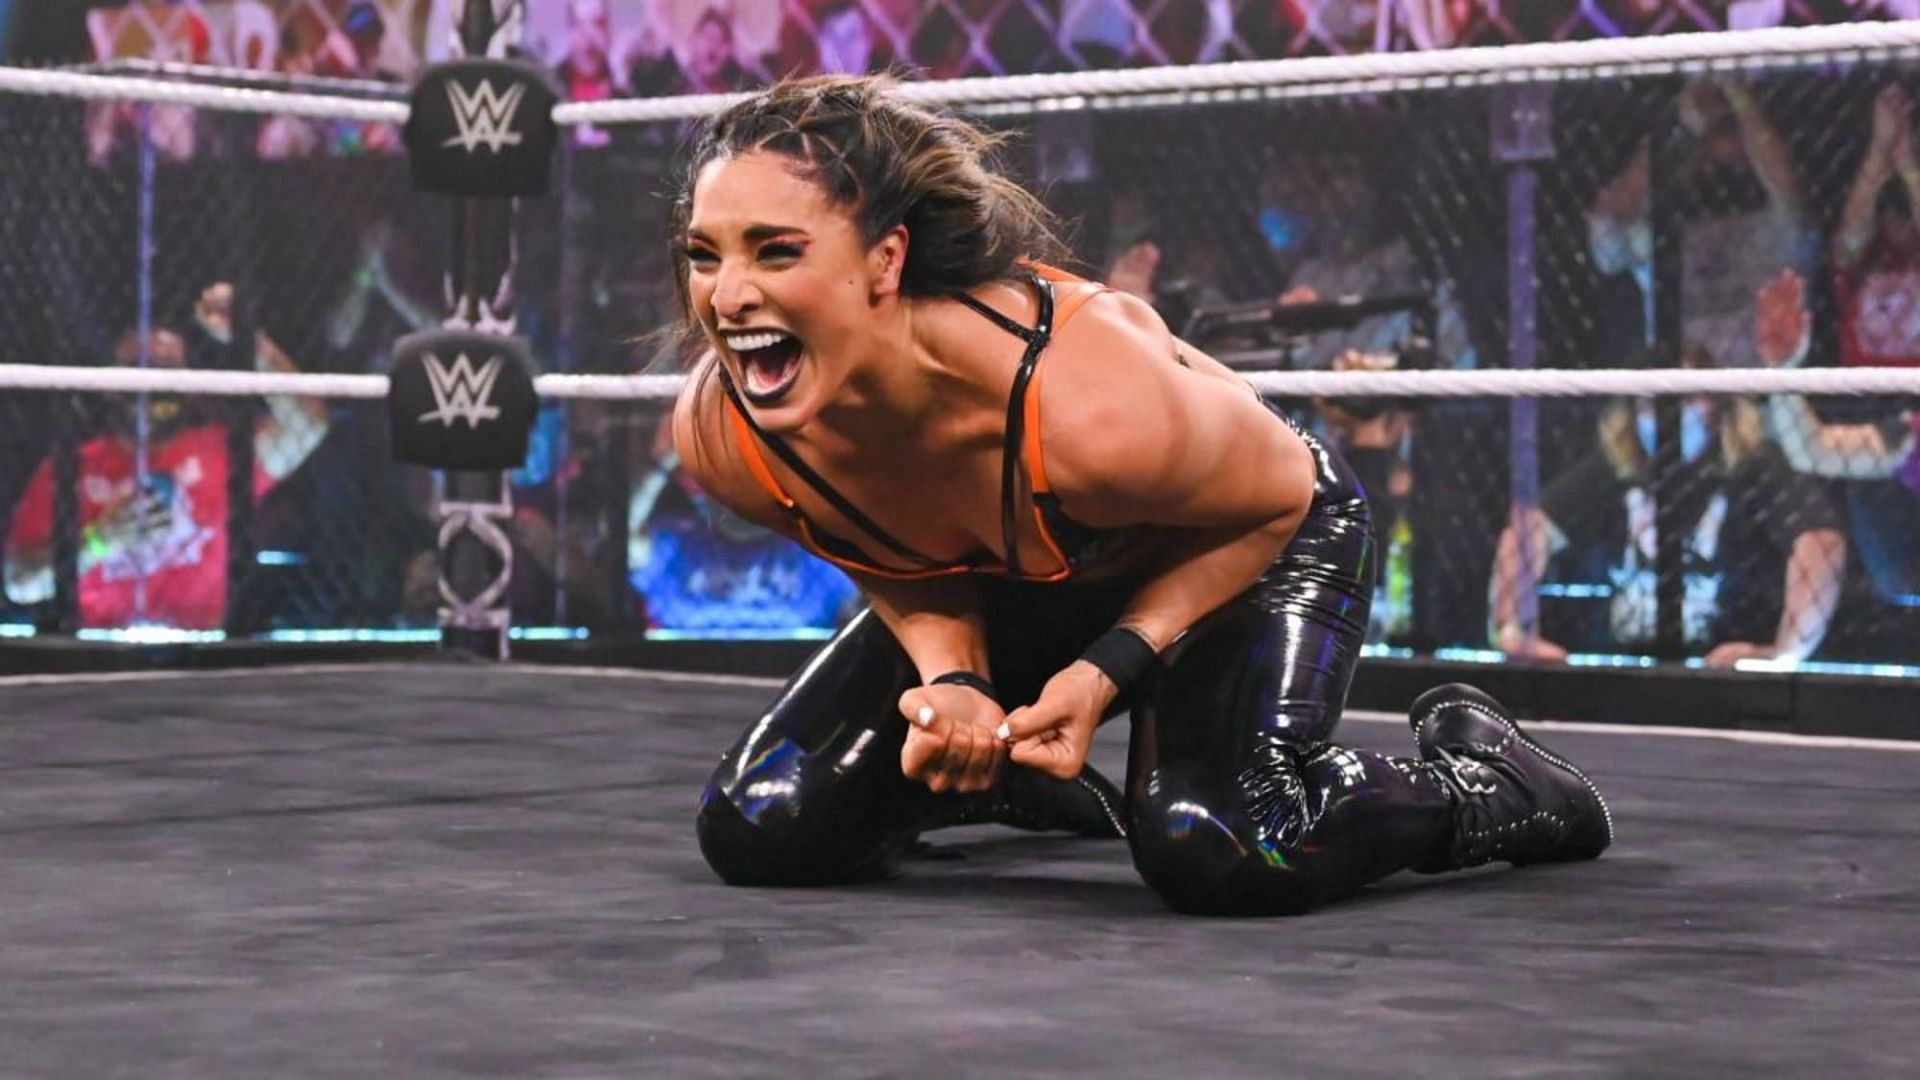 Raquel Gonzalez has a bright future in WWE.